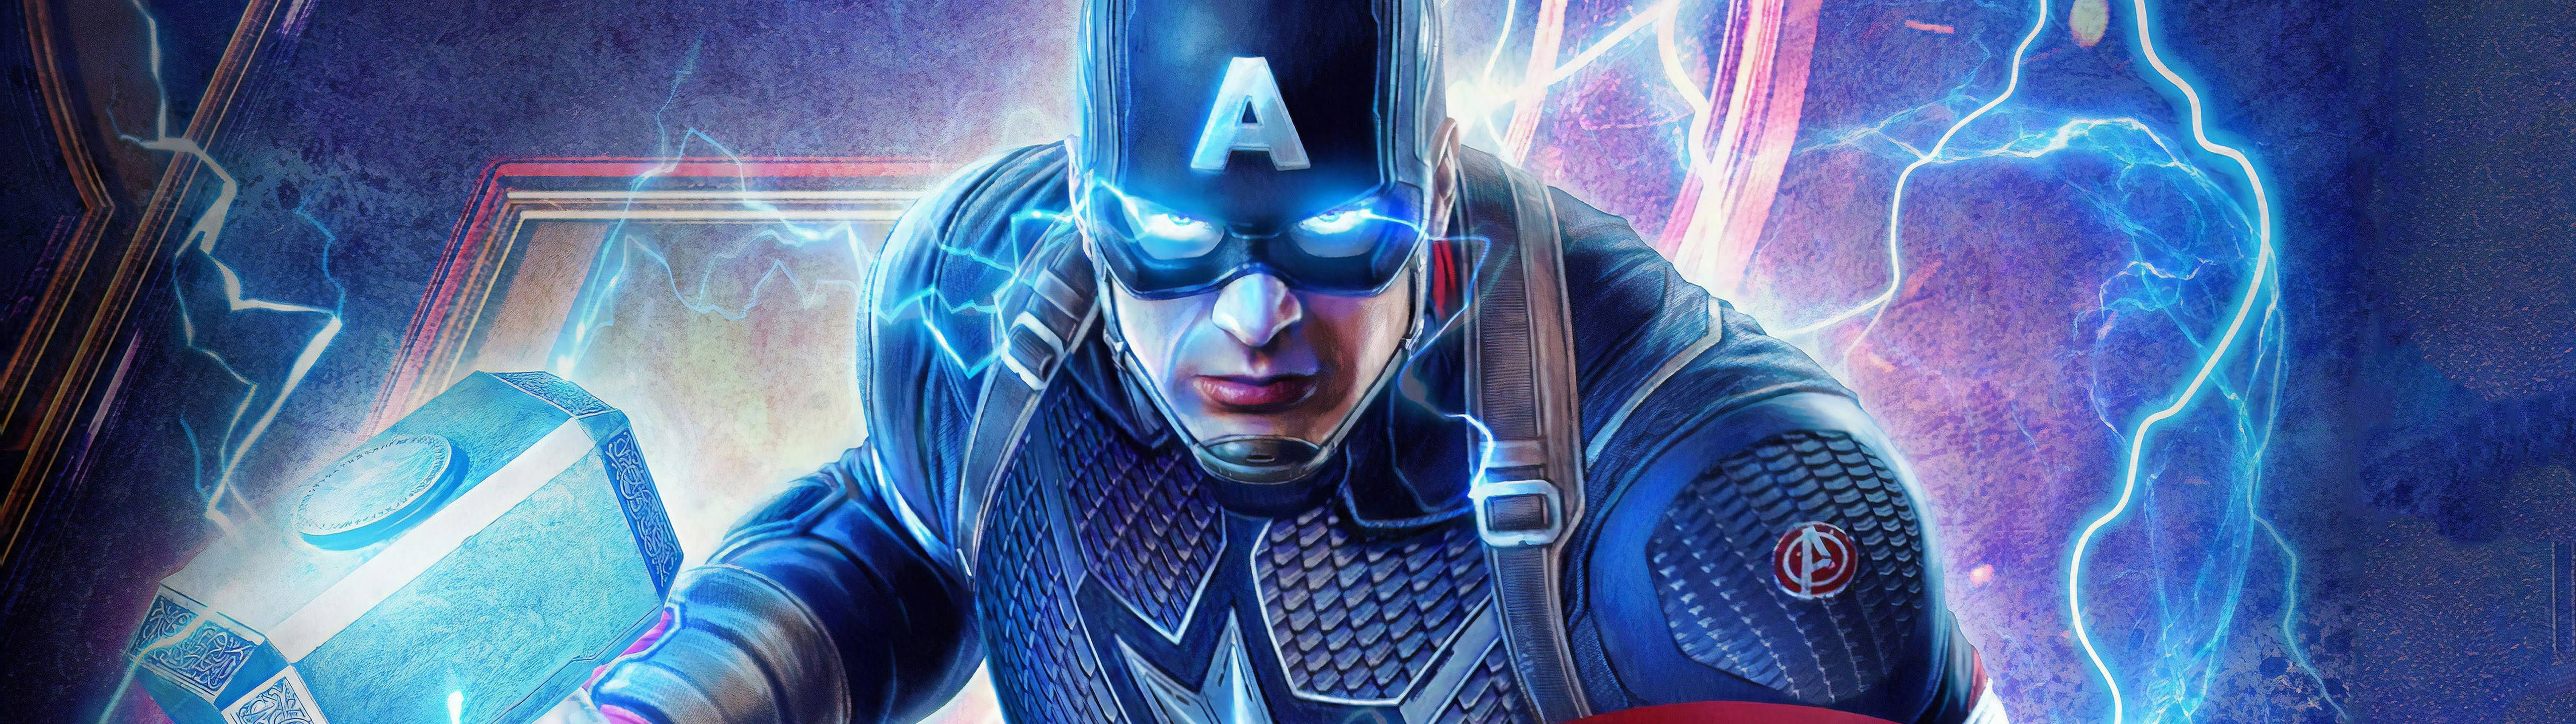 Marvel's Captain America 5120 X 1440 Wallpaper